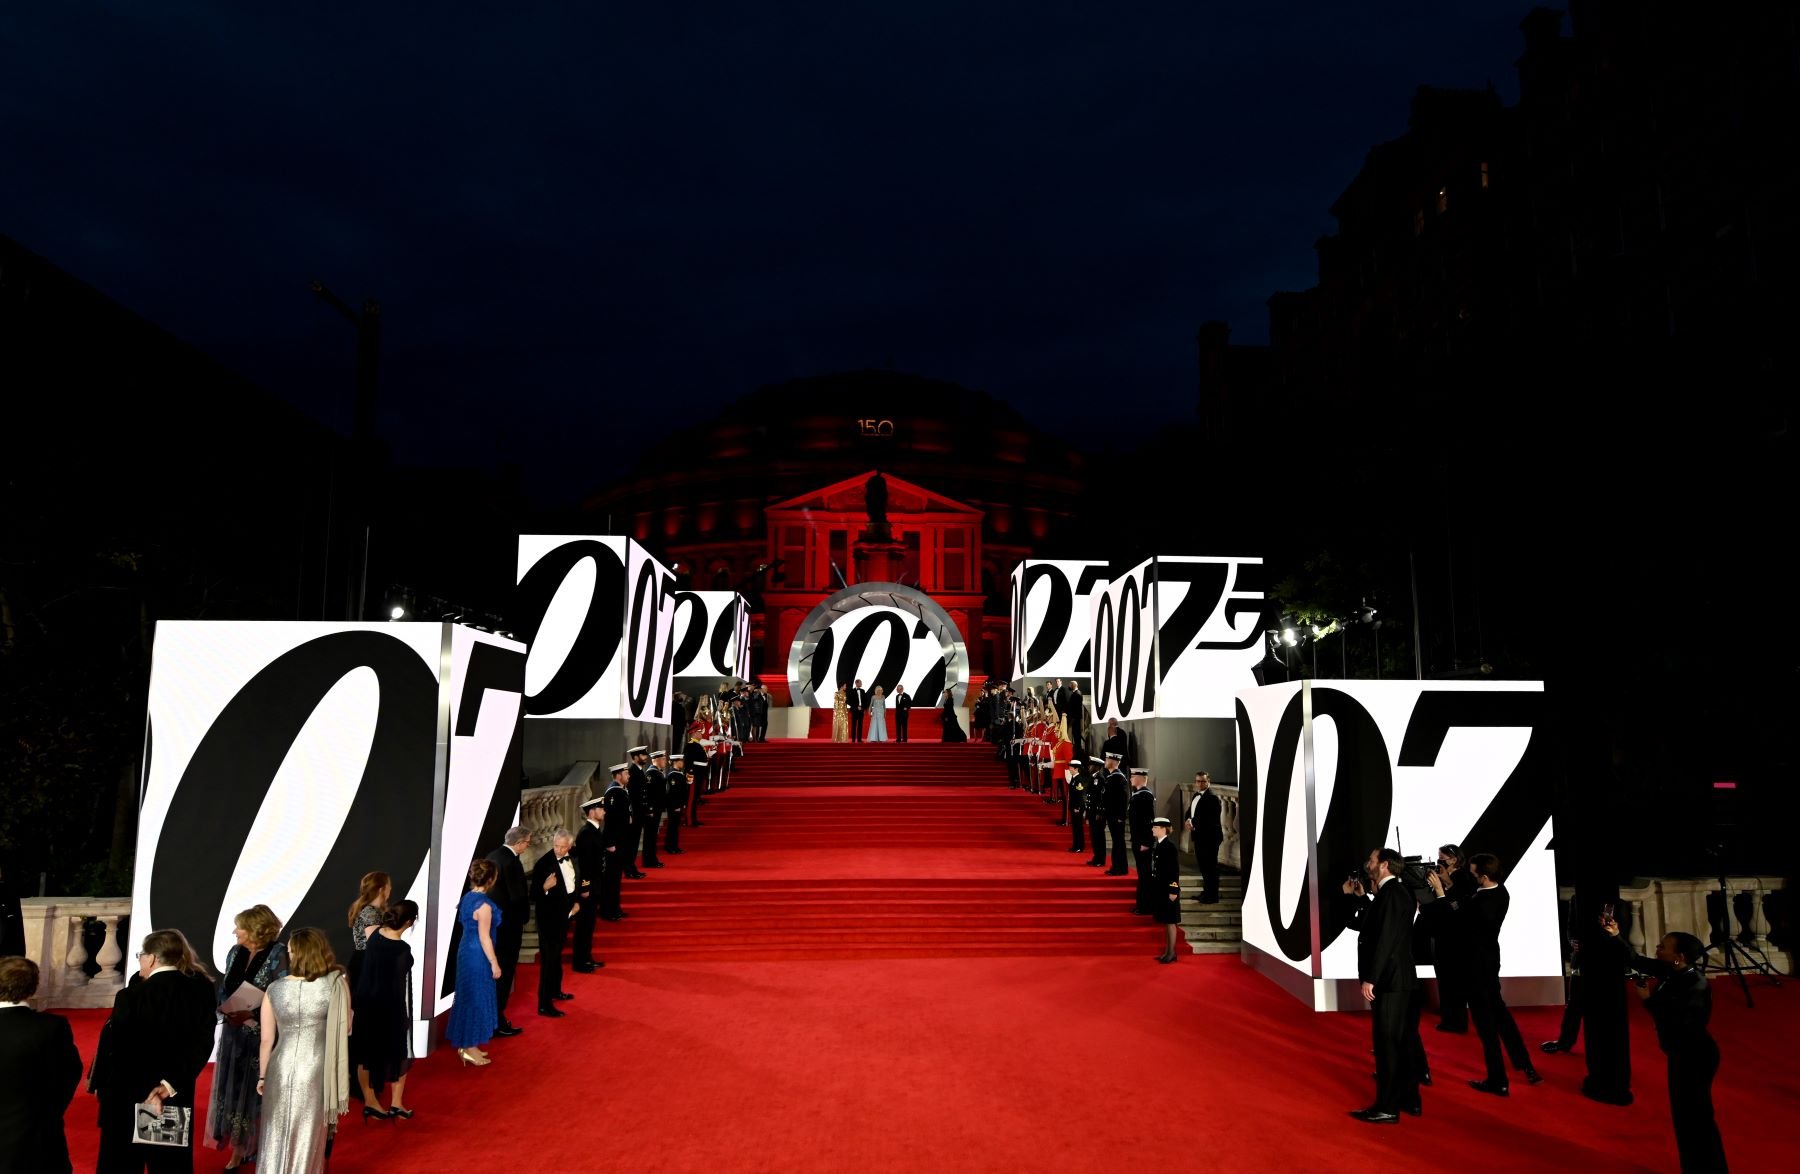 Where Was the James Bond Movie ‘No Time to Die’ Filmed?